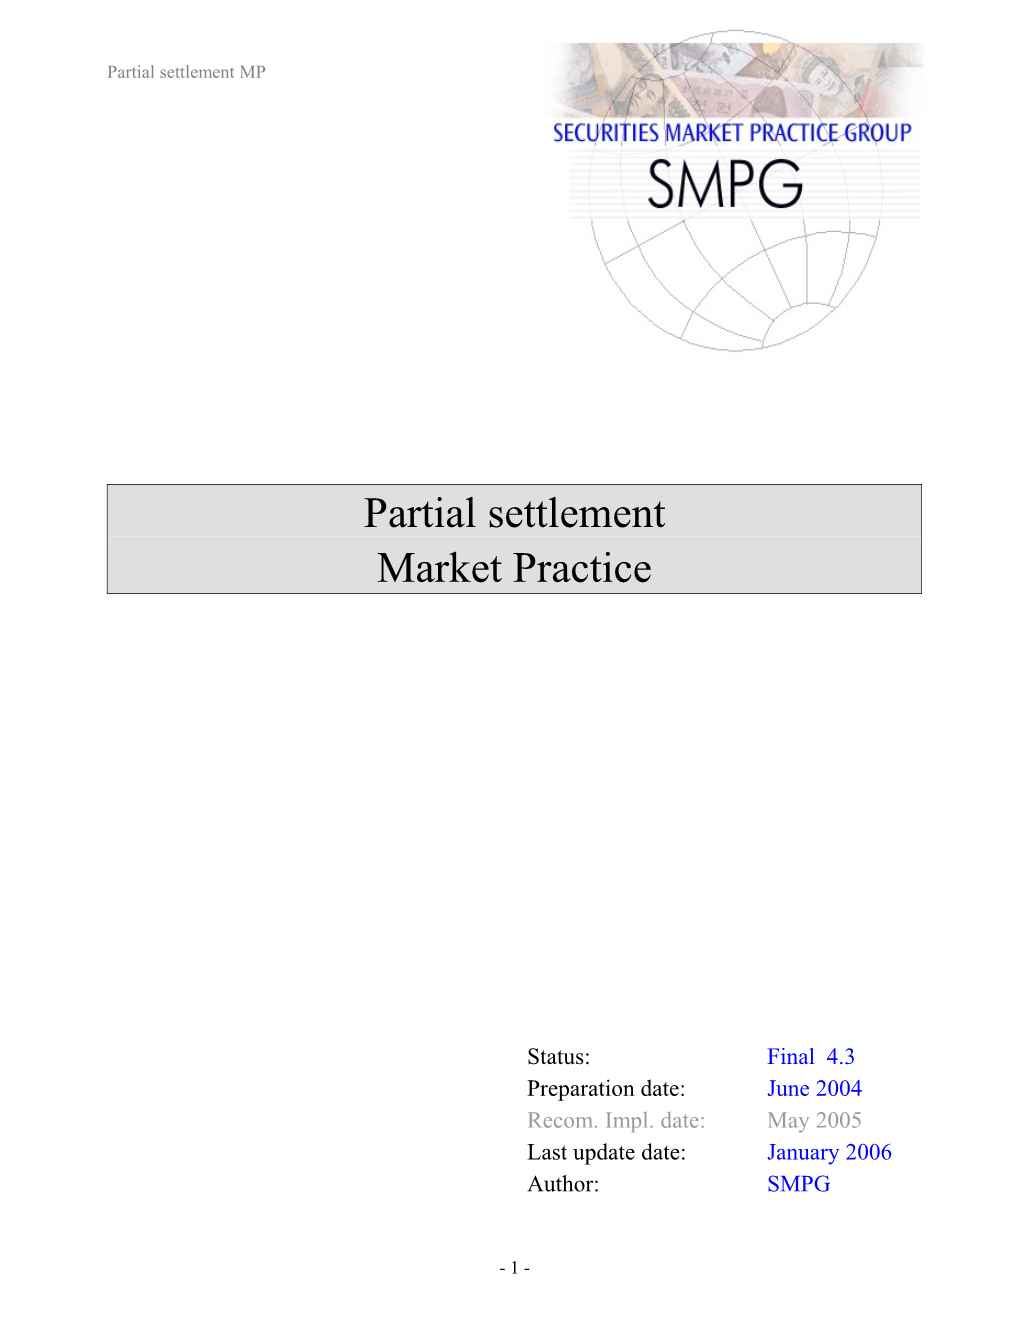 Partial Settlement MP